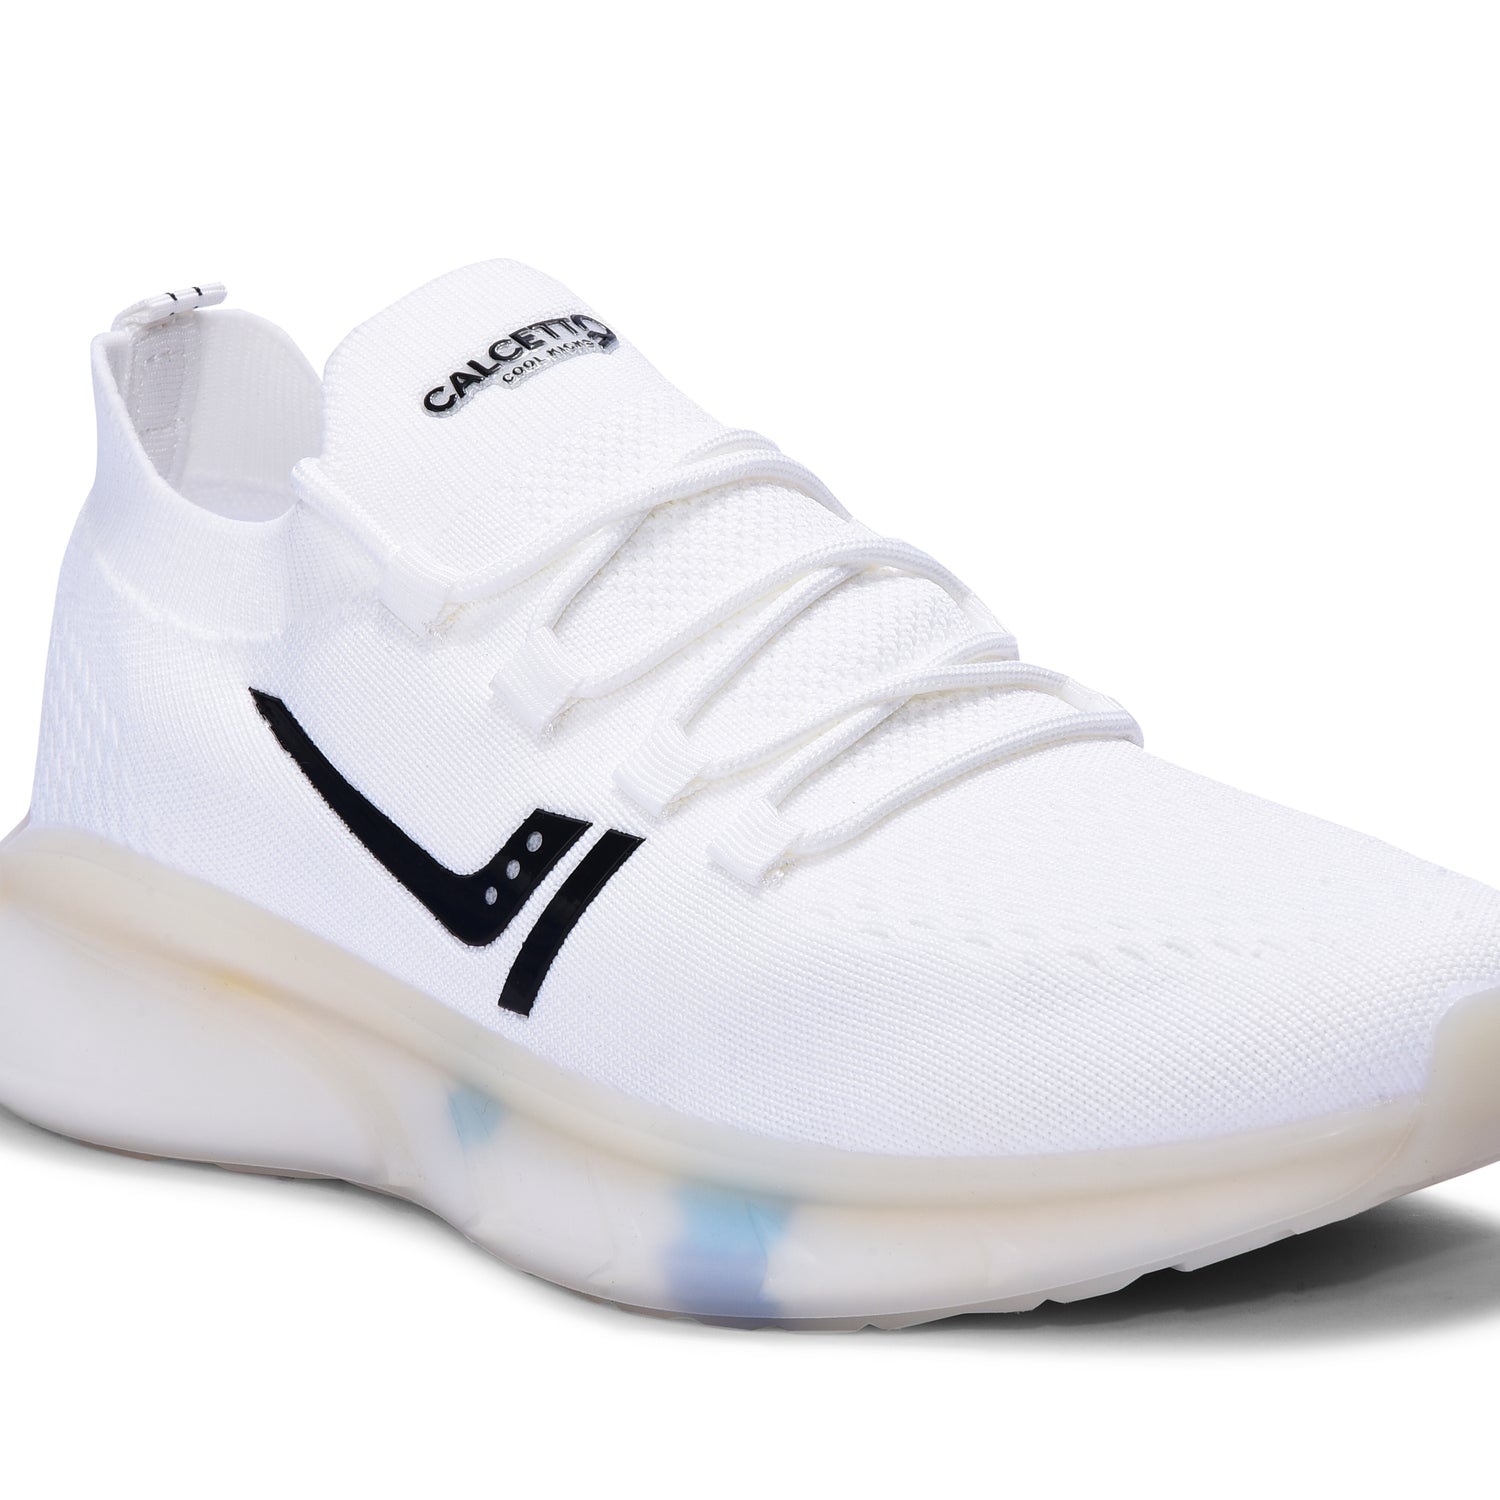 Calcetto CLT-0983 White Black Casual Shoe For Men